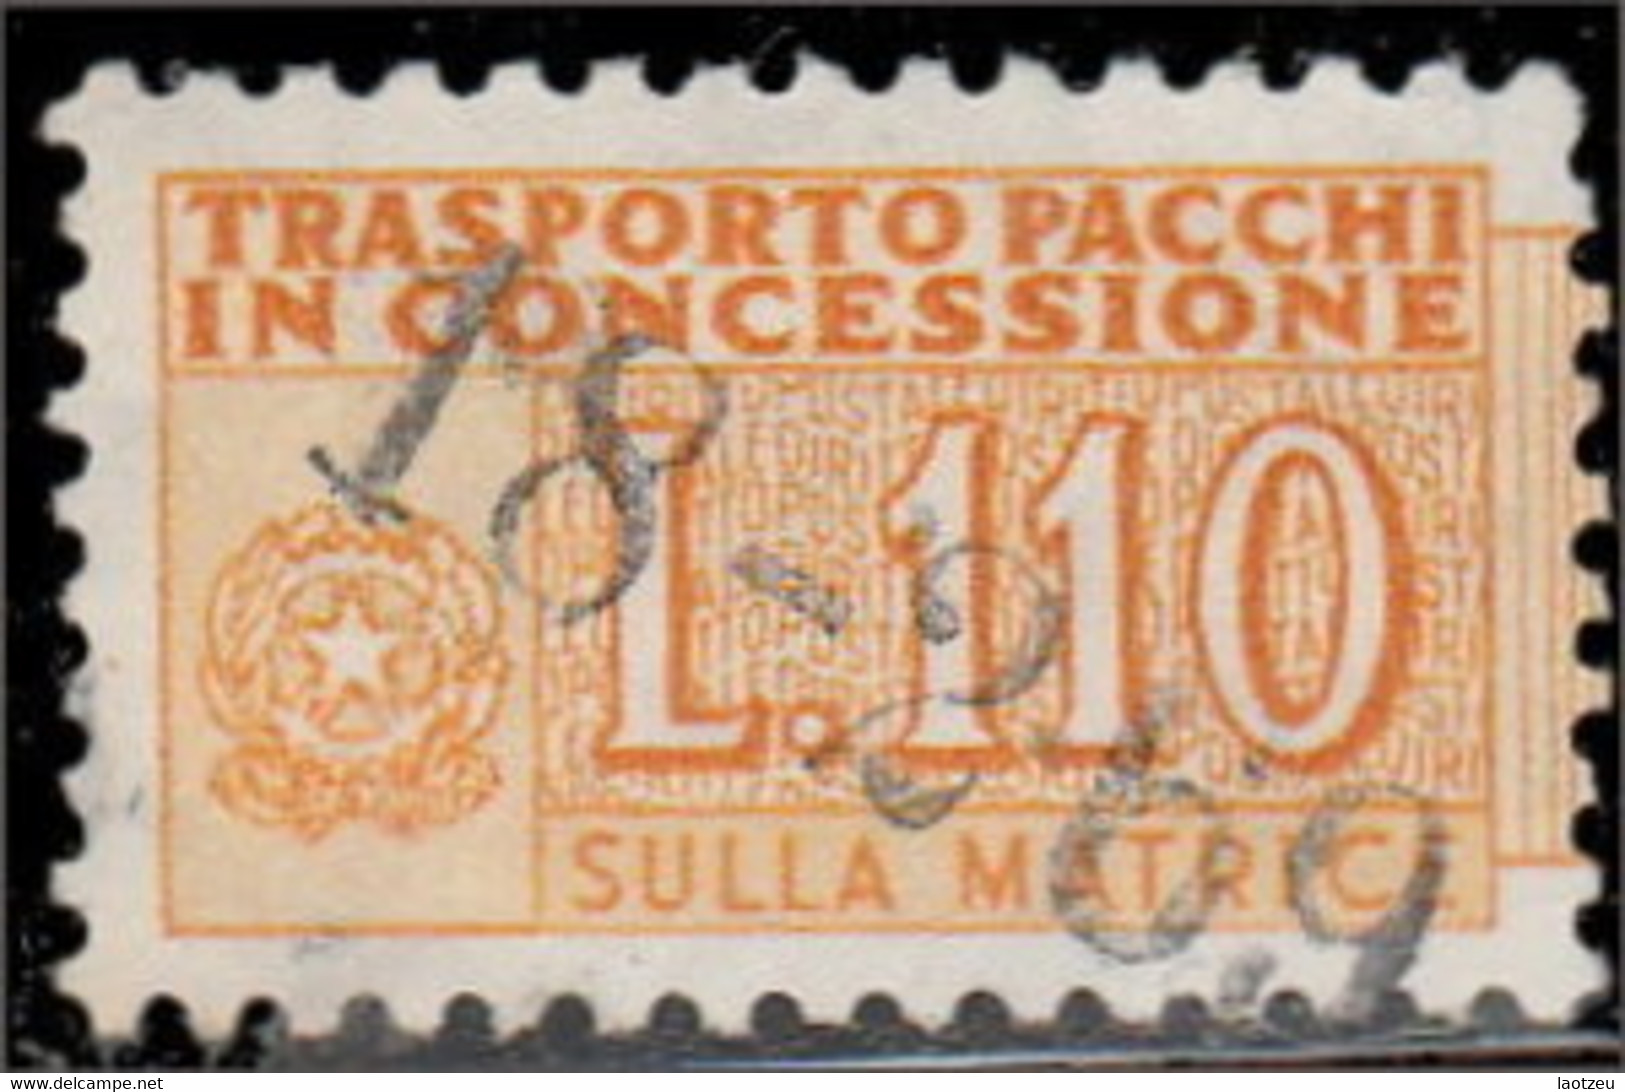 Italie Colis Postaux 1956. ~ CP 98  - 110 L. Chiffre - Postal Parcels